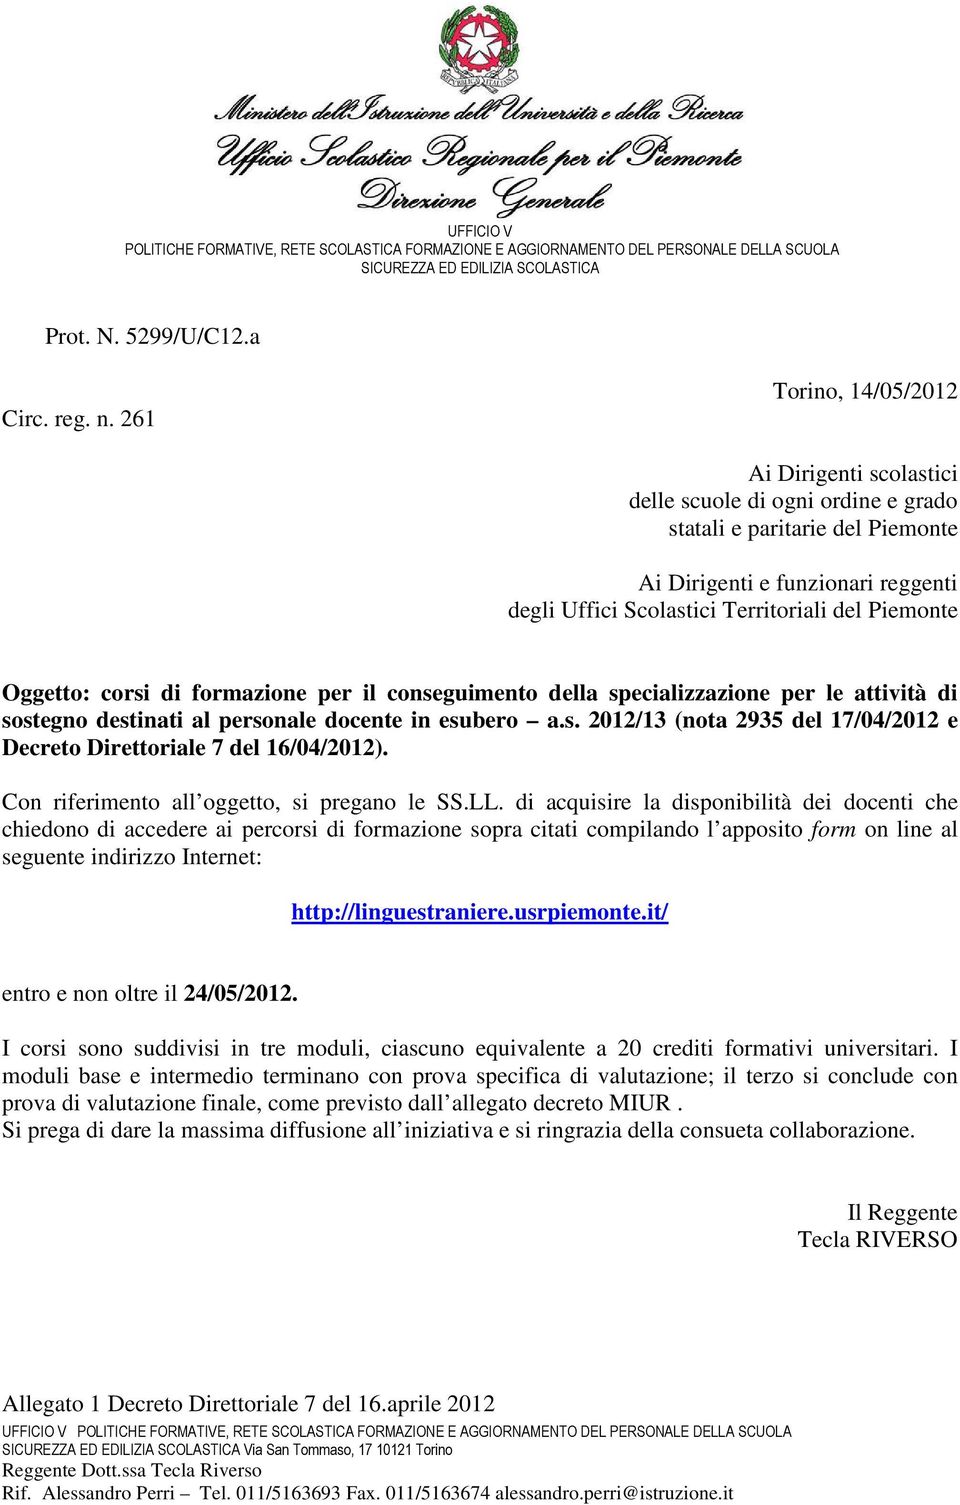 Piemonte Oggetto: corsi di formazione per il conseguimento della specializzazione per le attività di sostegno destinati al personale docente in esubero a.s. 2012/13 (nota 2935 del 17/04/2012 e Decreto Direttoriale 7 del 16/04/2012).